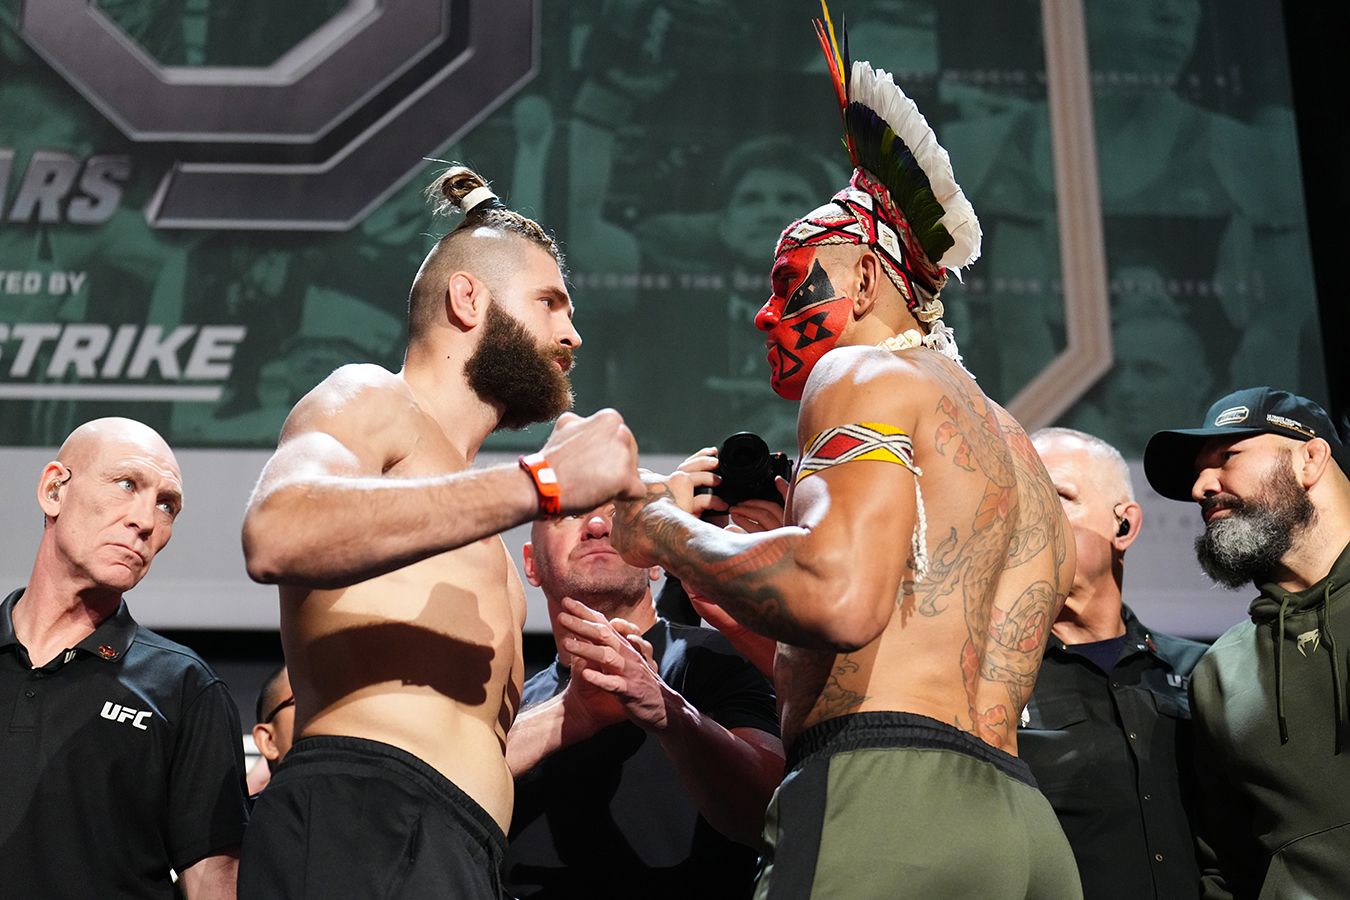 UFC 303: огненный реванш Перейры с Прохазкой и последний бой в карьере Орловского? LIVE